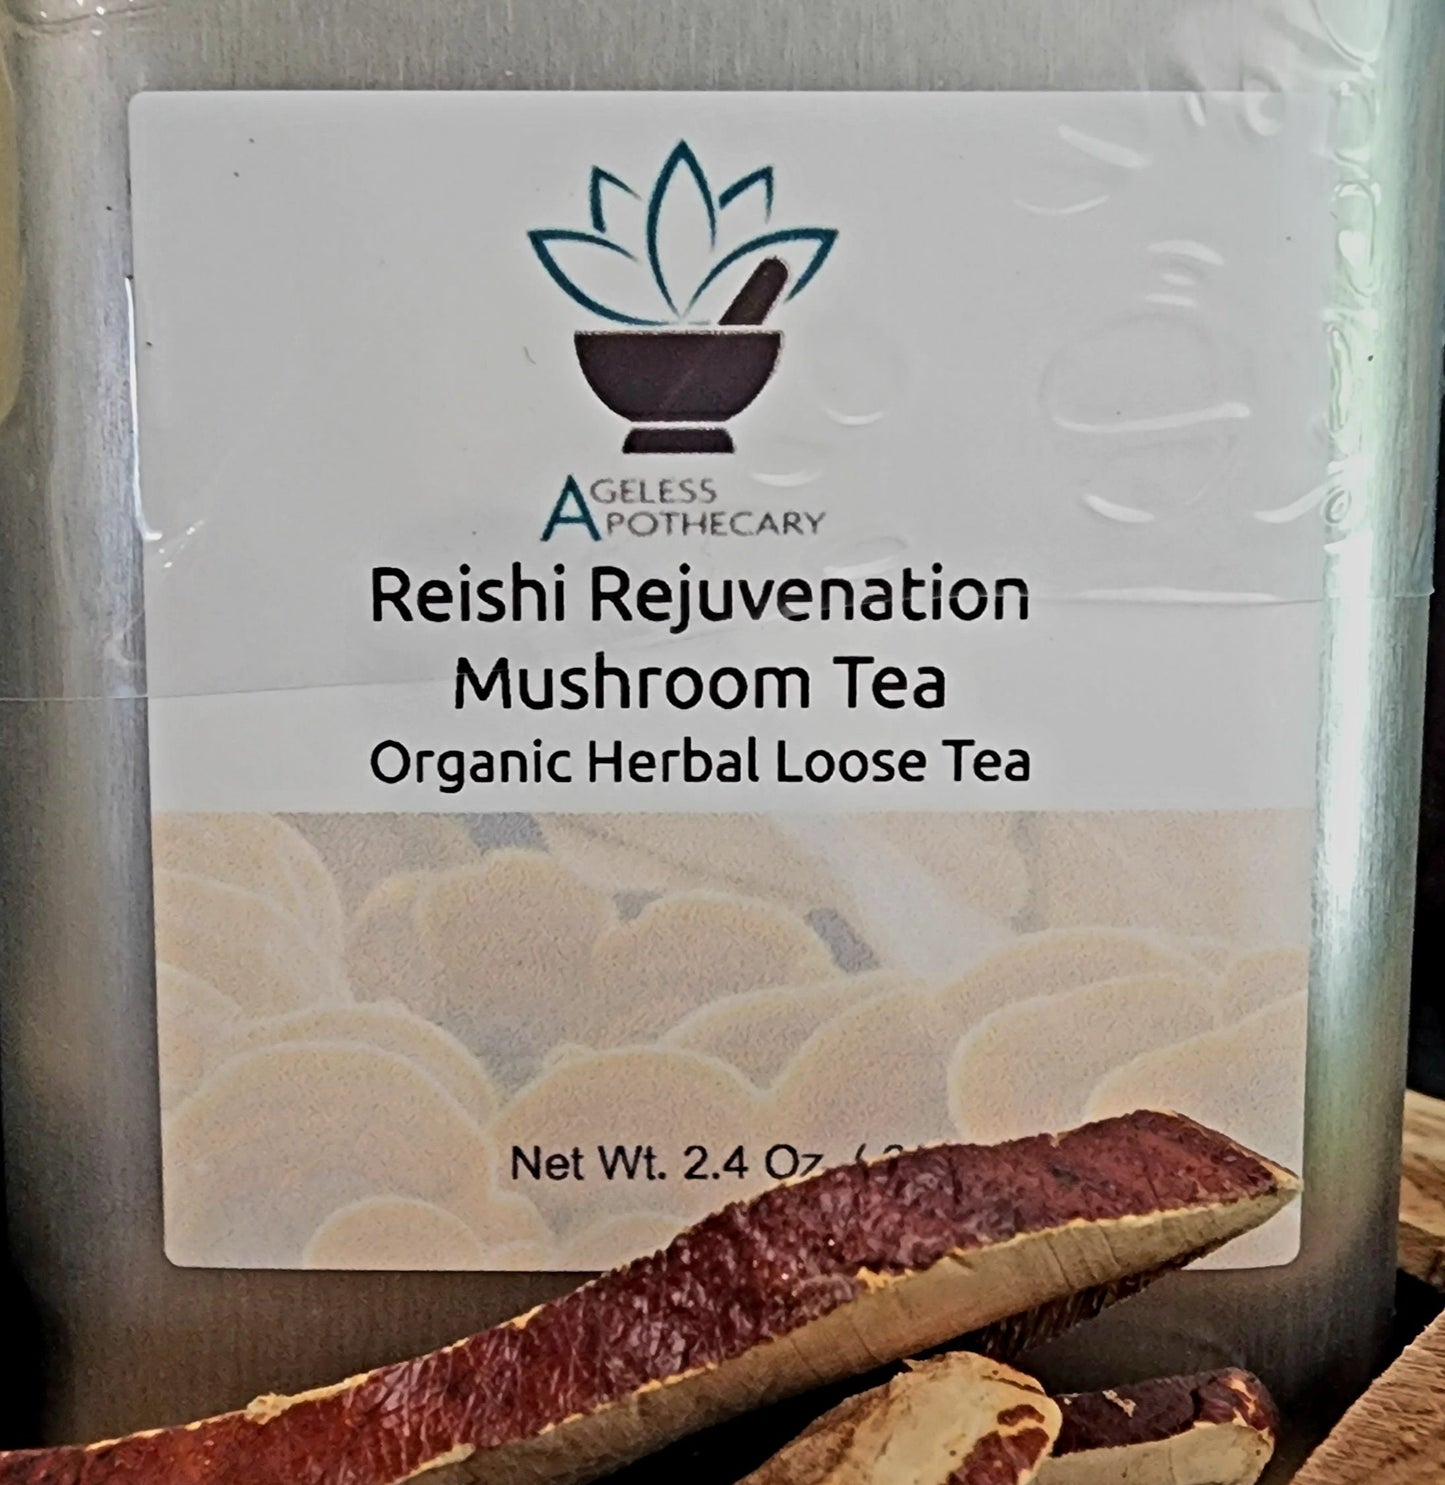 Reishi Rejuvenation Mushroom Loose Tea